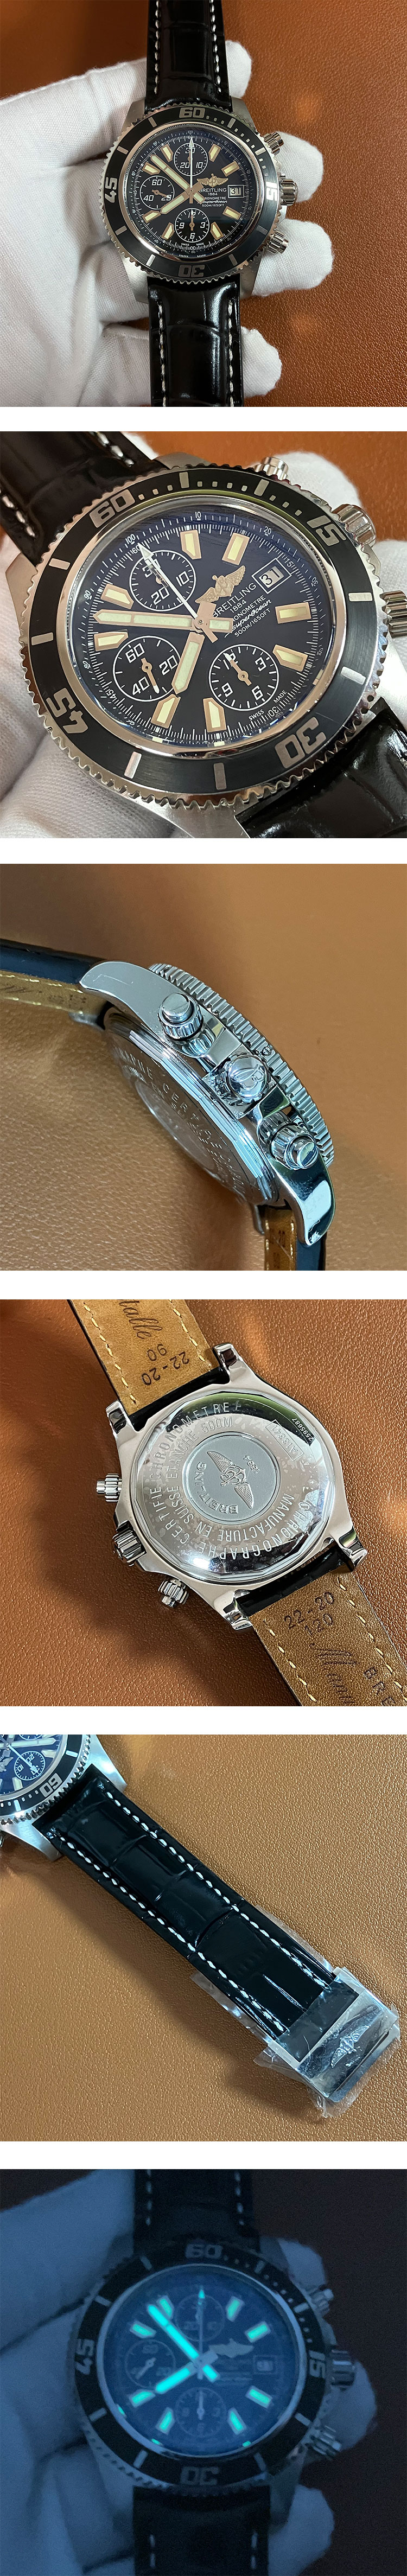 新品ブライトリング時計コピー スーパーオーシャン クロノグラフ A1334102/BA84